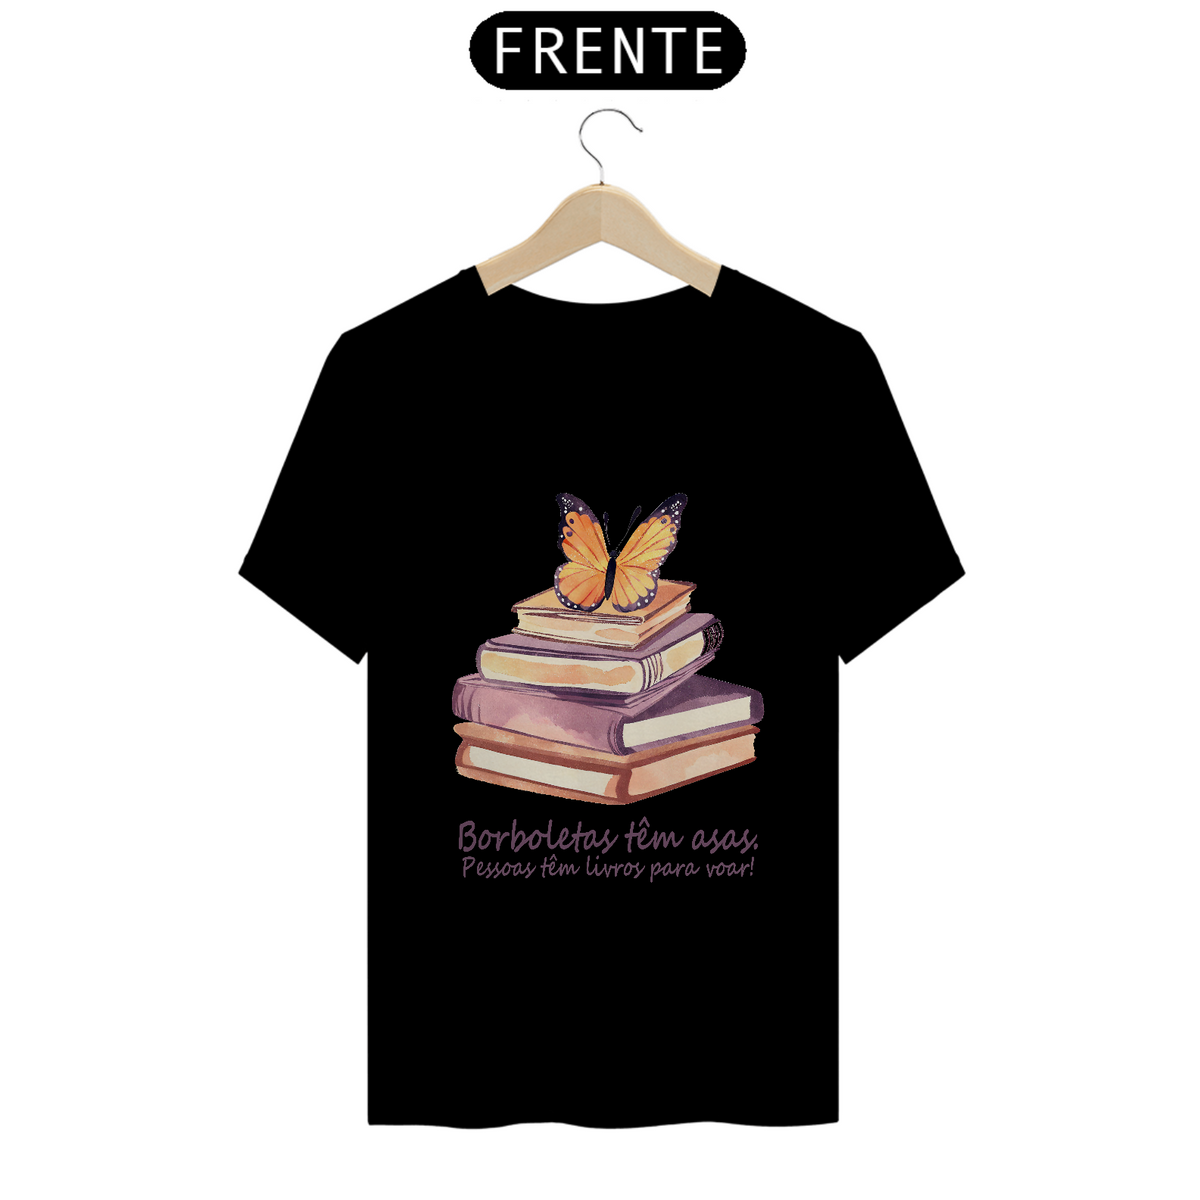 Nome do produto: Camiseta Borboletas têm asas. Pessoas tem livros para voar!